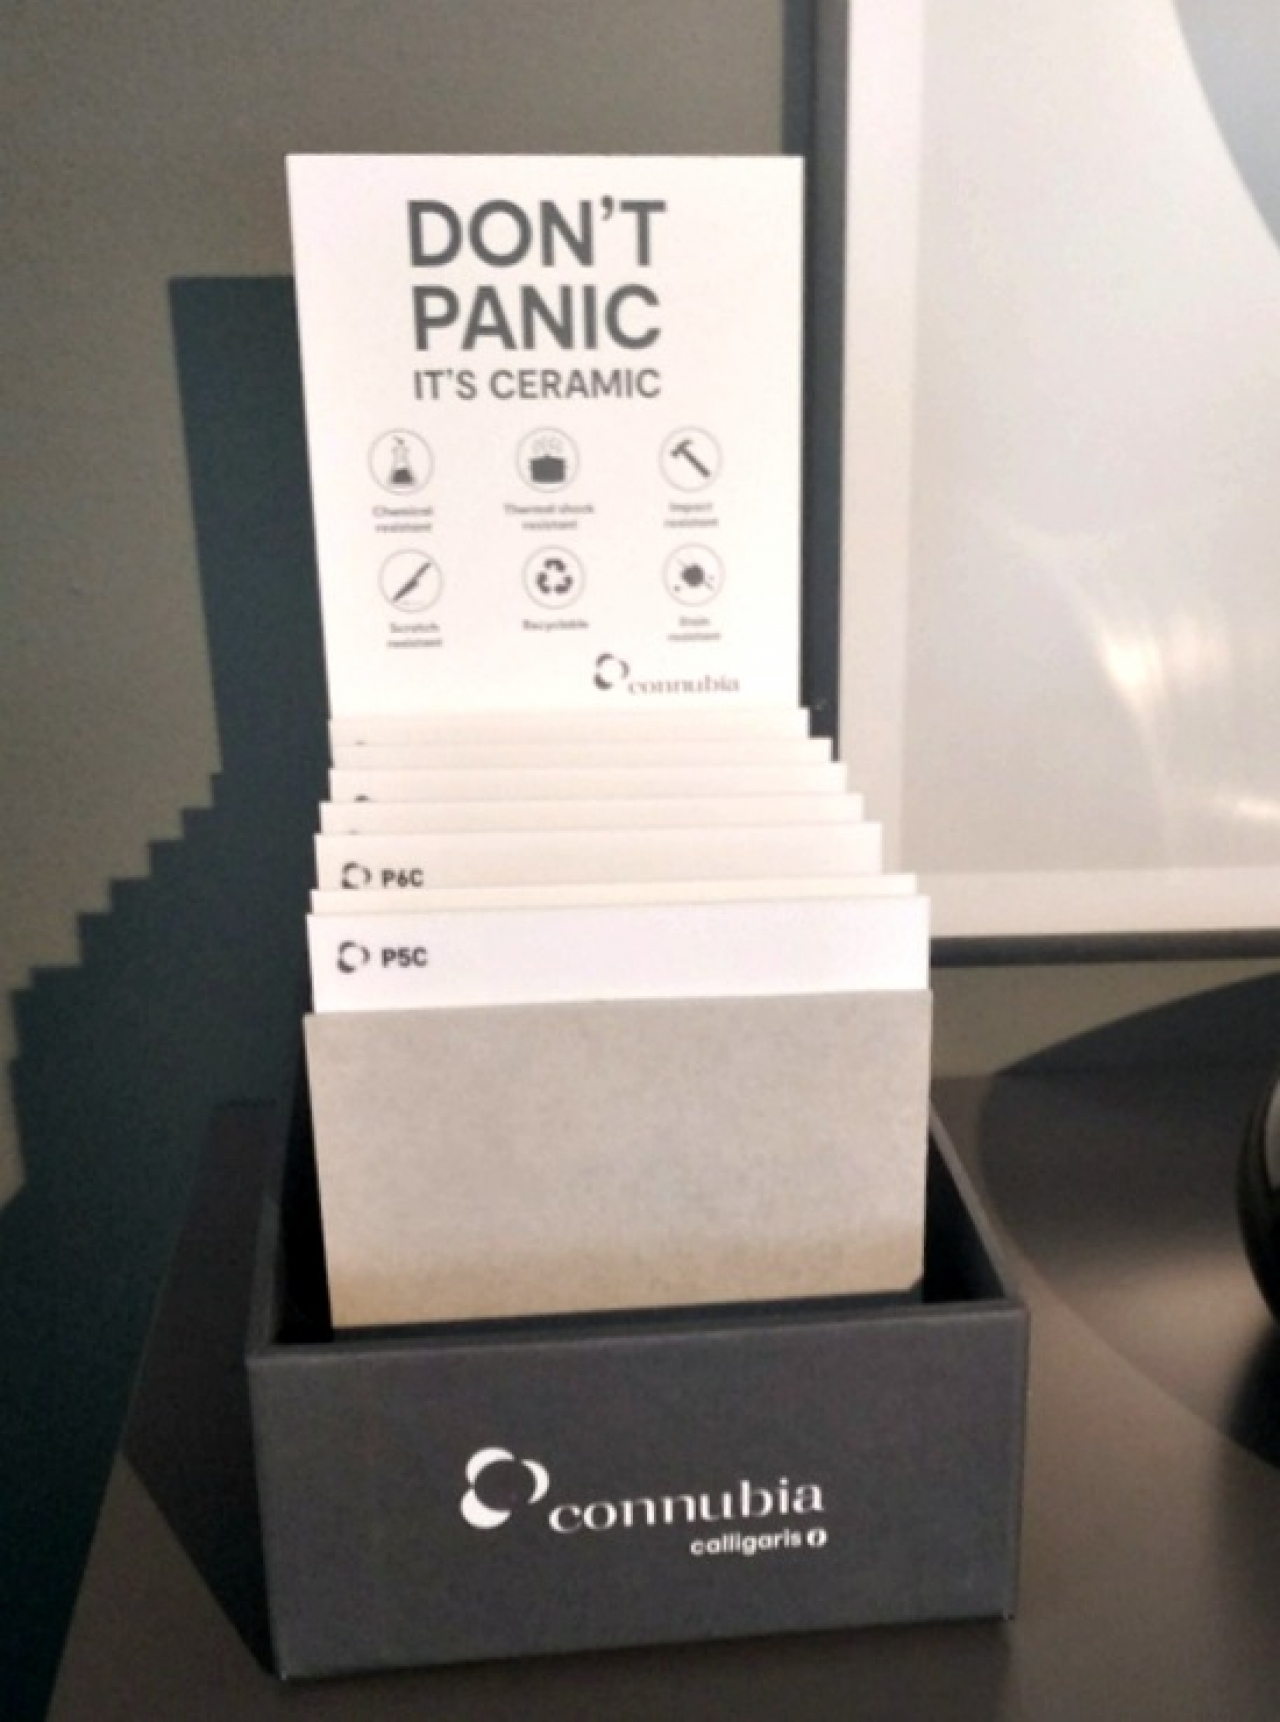 Κεραμικά τραπέζια CALLIGARIS: don't panic is ceramic!